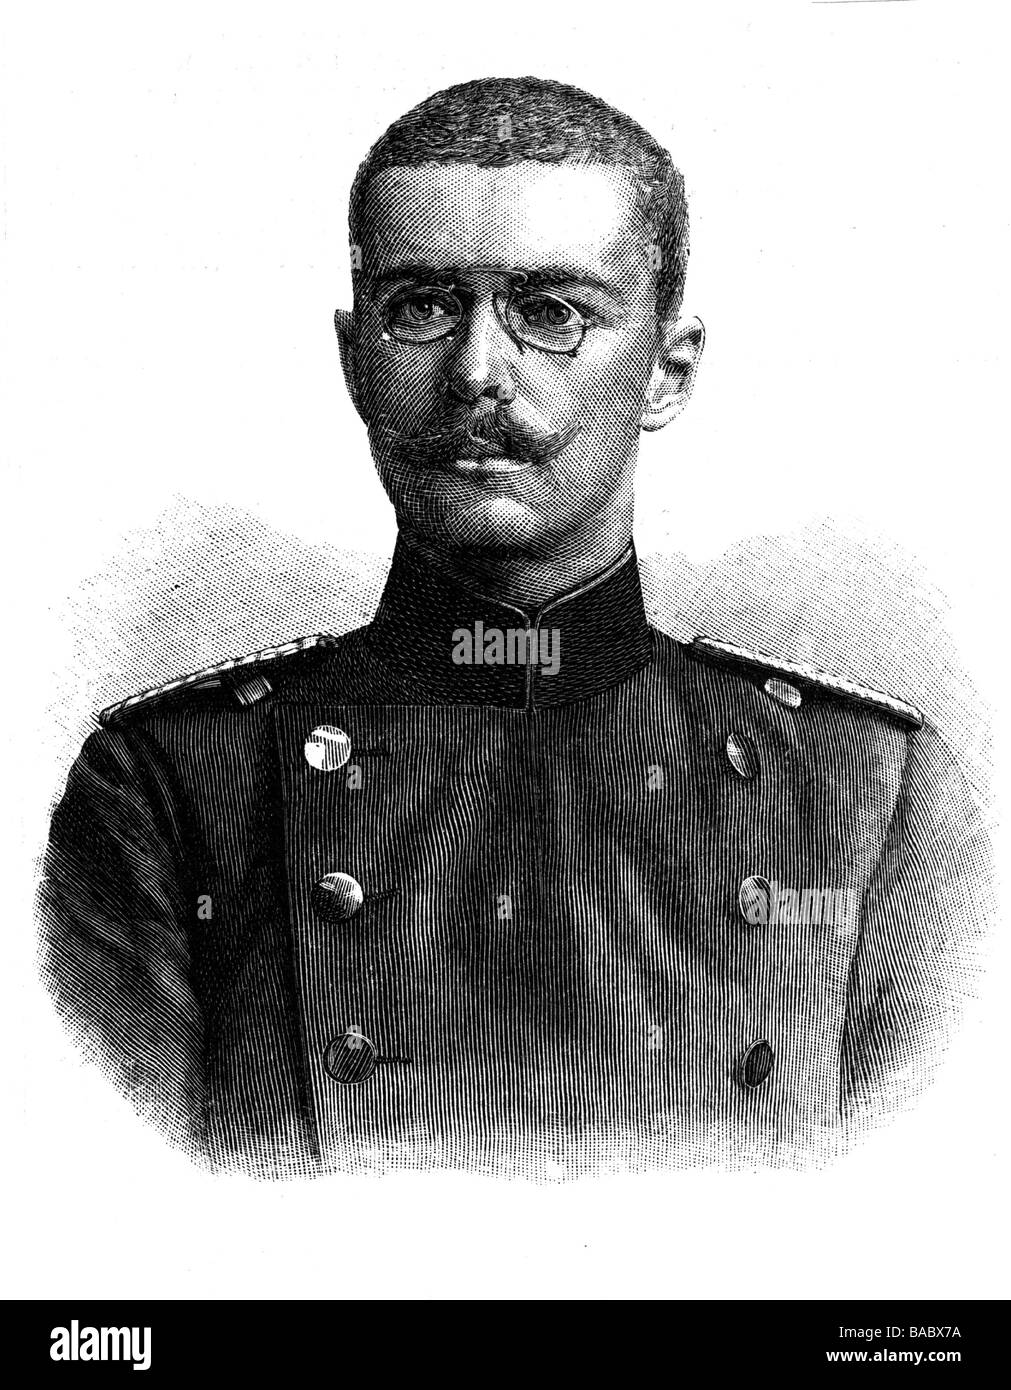 Goetzen, Gustav Adolf, Graf von, 12.5.1866 - 1.12.1910, chercheur allemand, Afrique de l'est allemande, portrait, gravure de bois, 1895, Banque D'Images